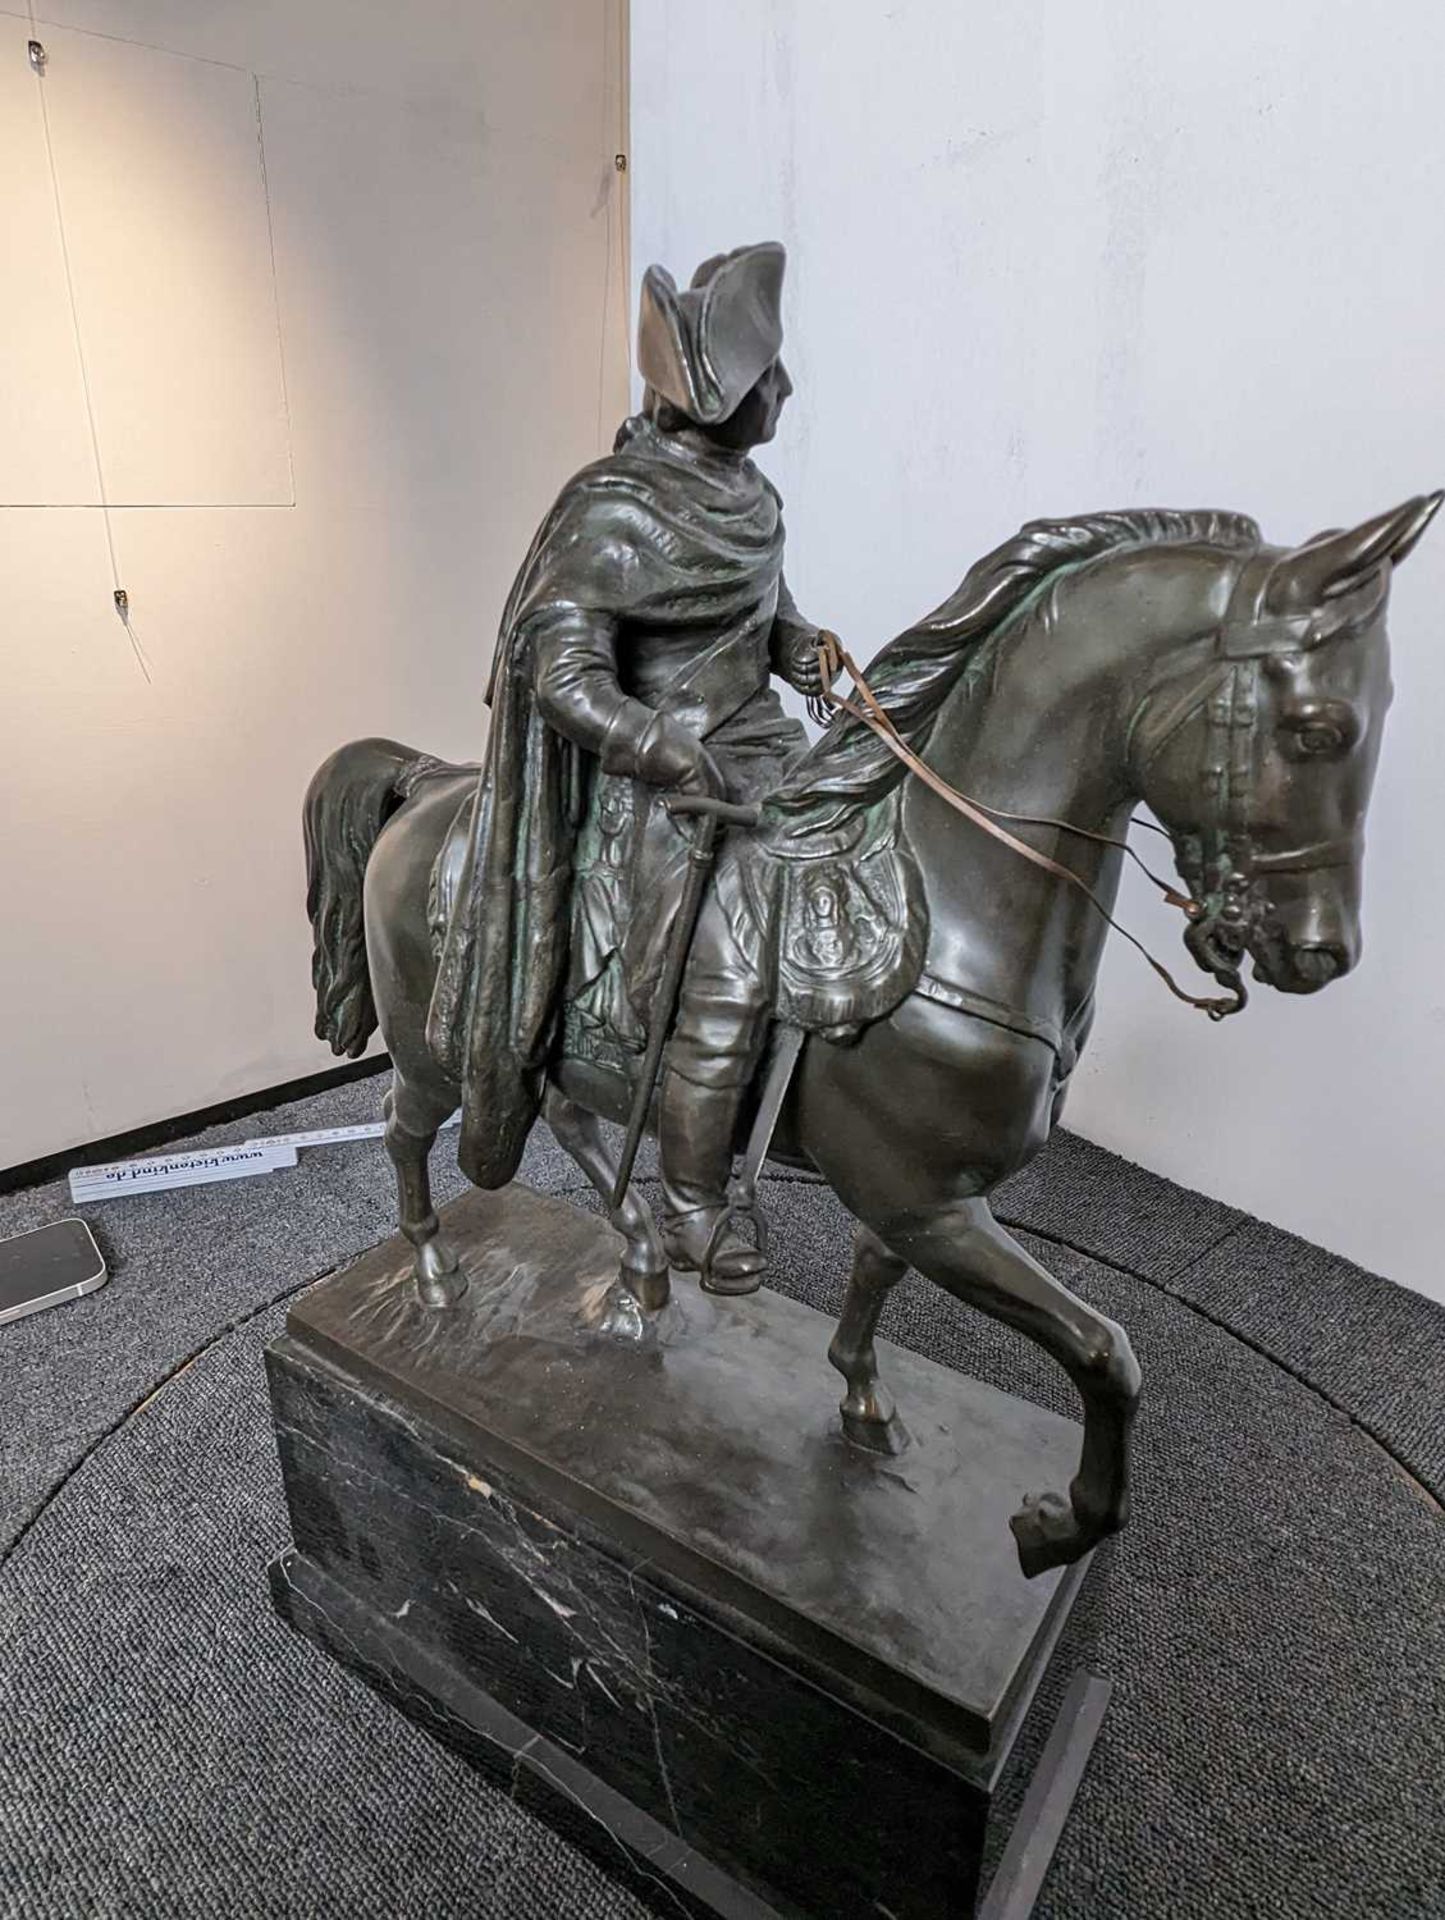 Skulptur von "Friedrich der Große" - Image 23 of 27